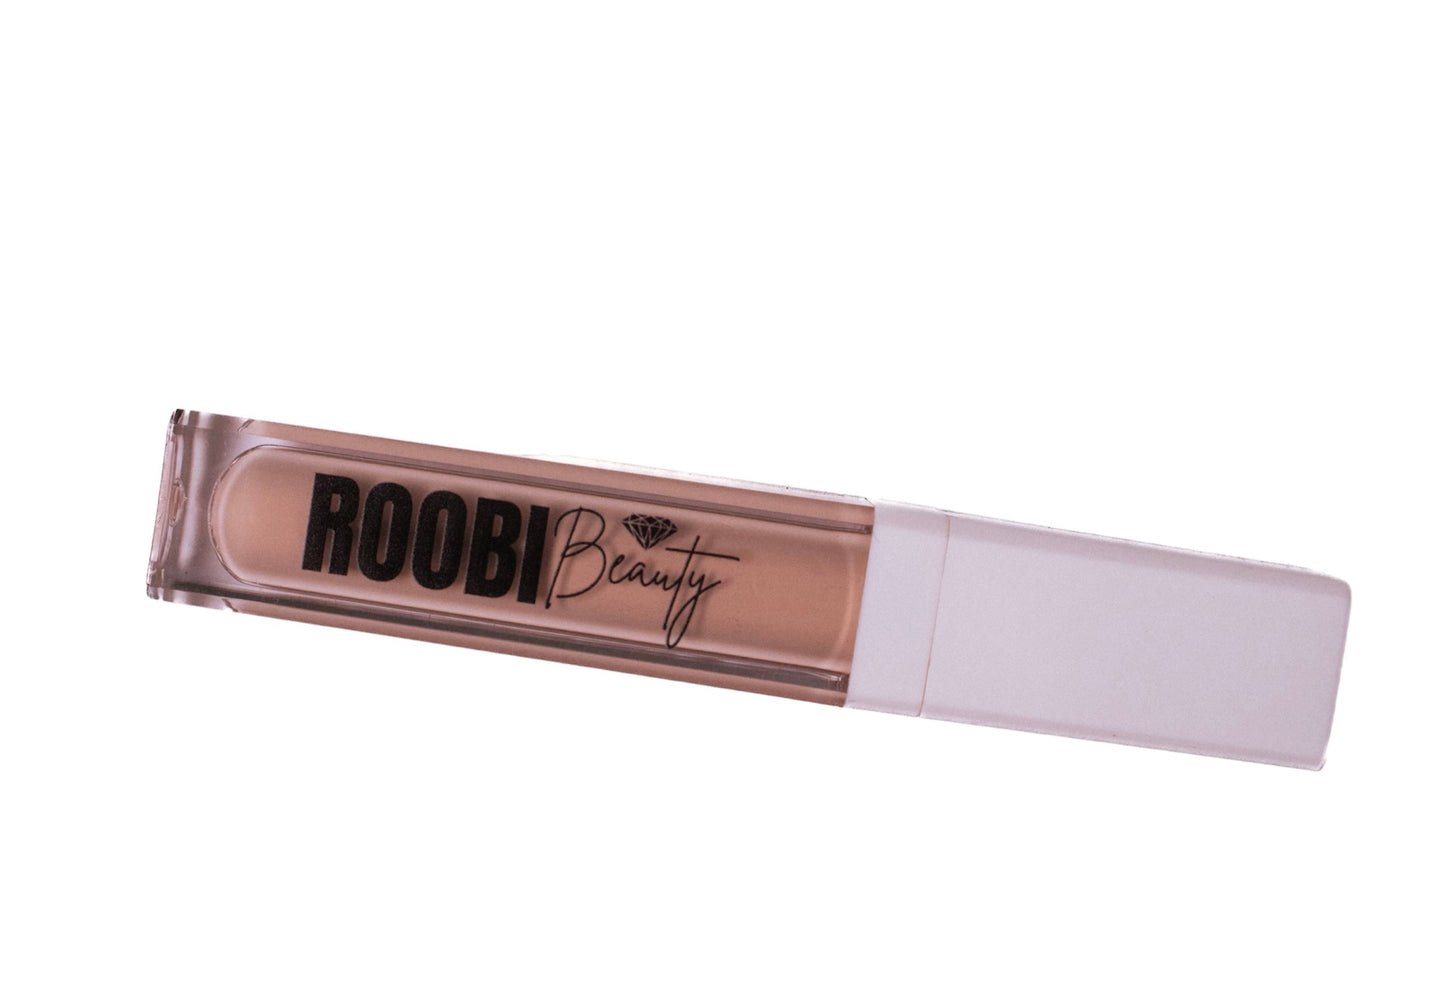 Roobi Beauty Cream gloss "Her"